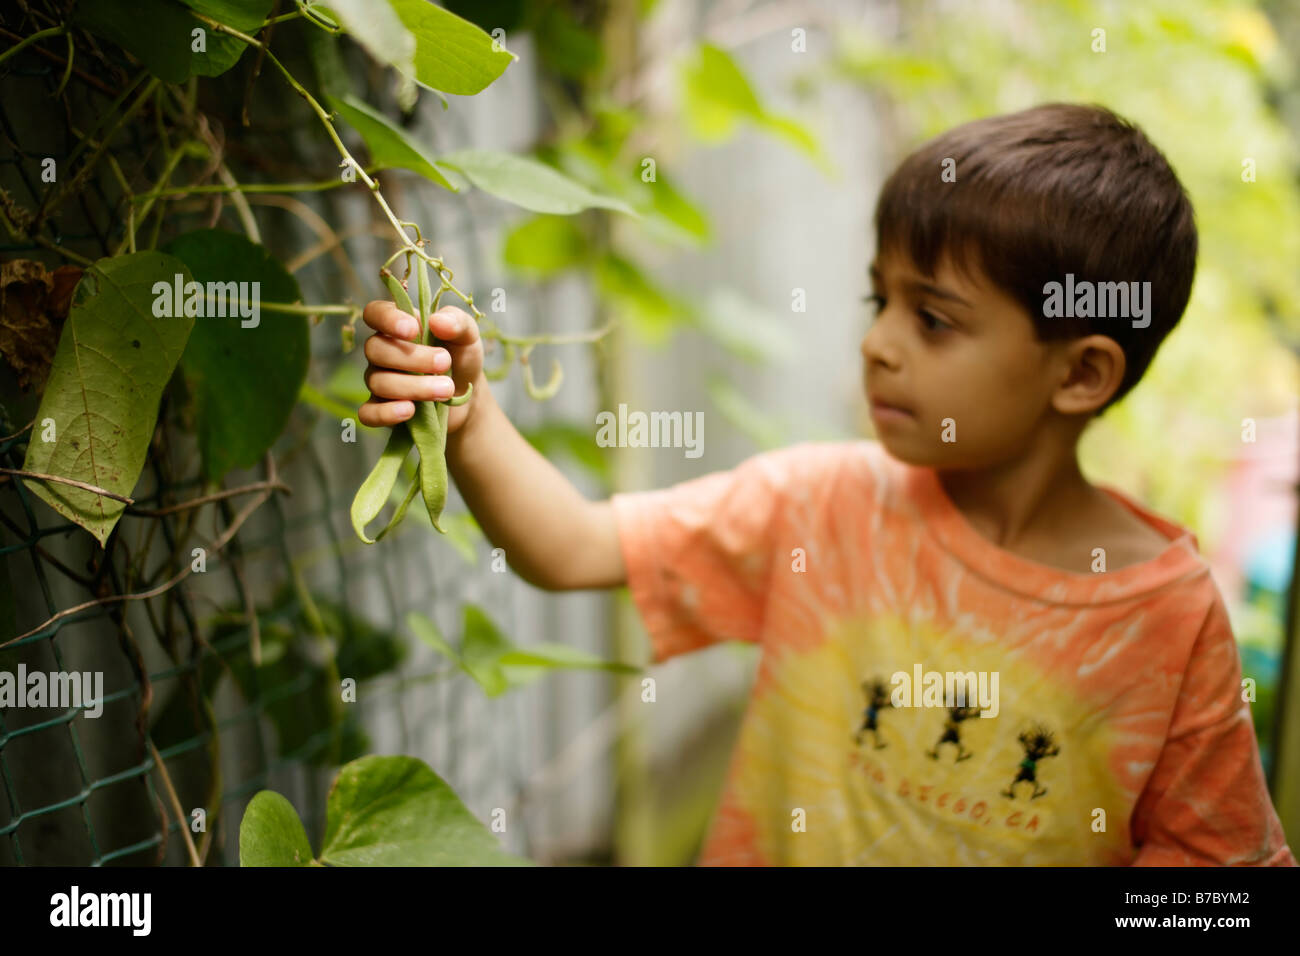 Sechs Jahre alter Junge nimmt grüne Bohnen im Garten Gemüsebeet Stockfoto